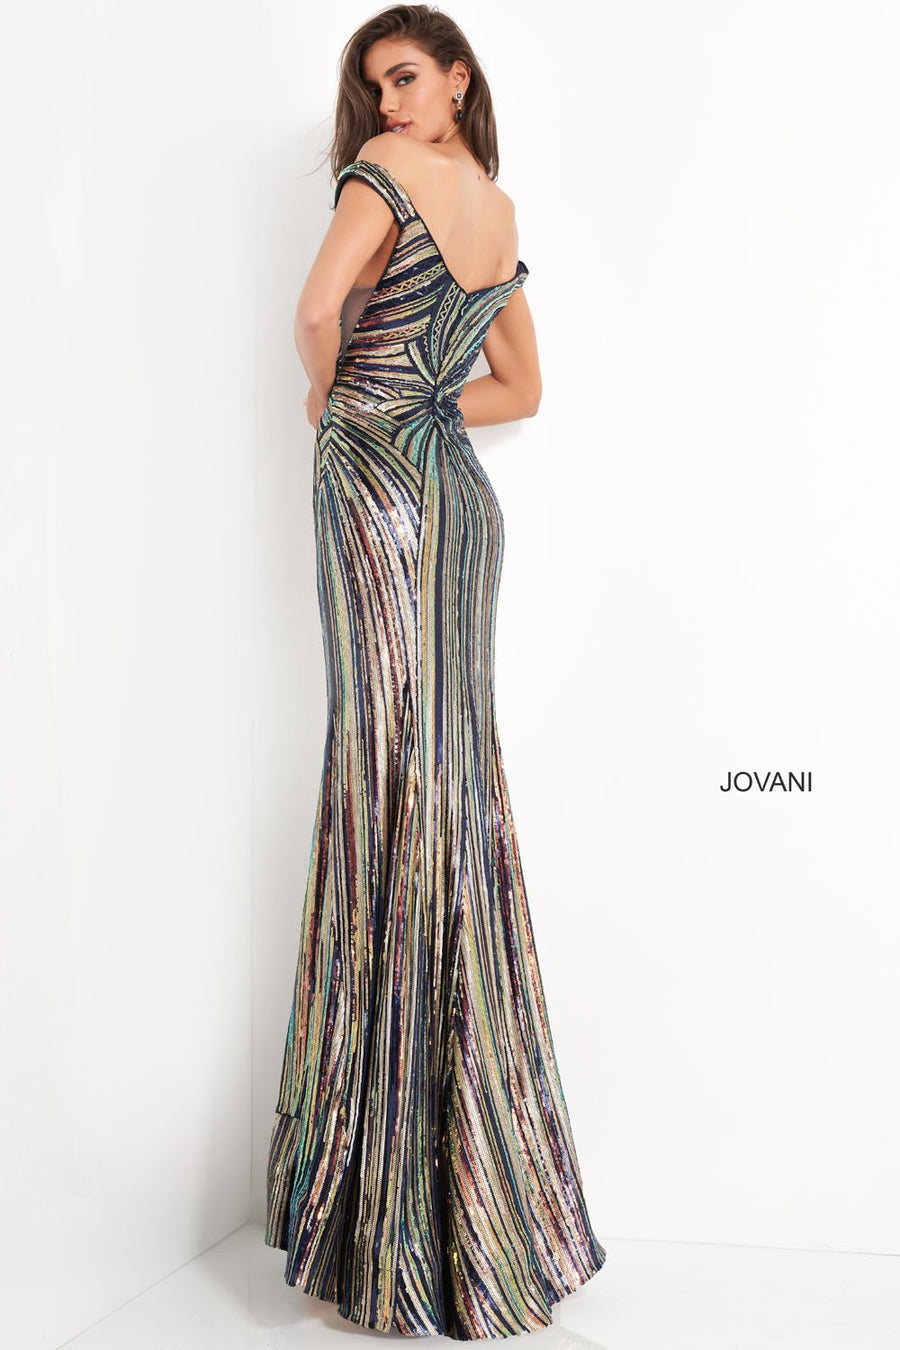 Jovani 04809 Dresses